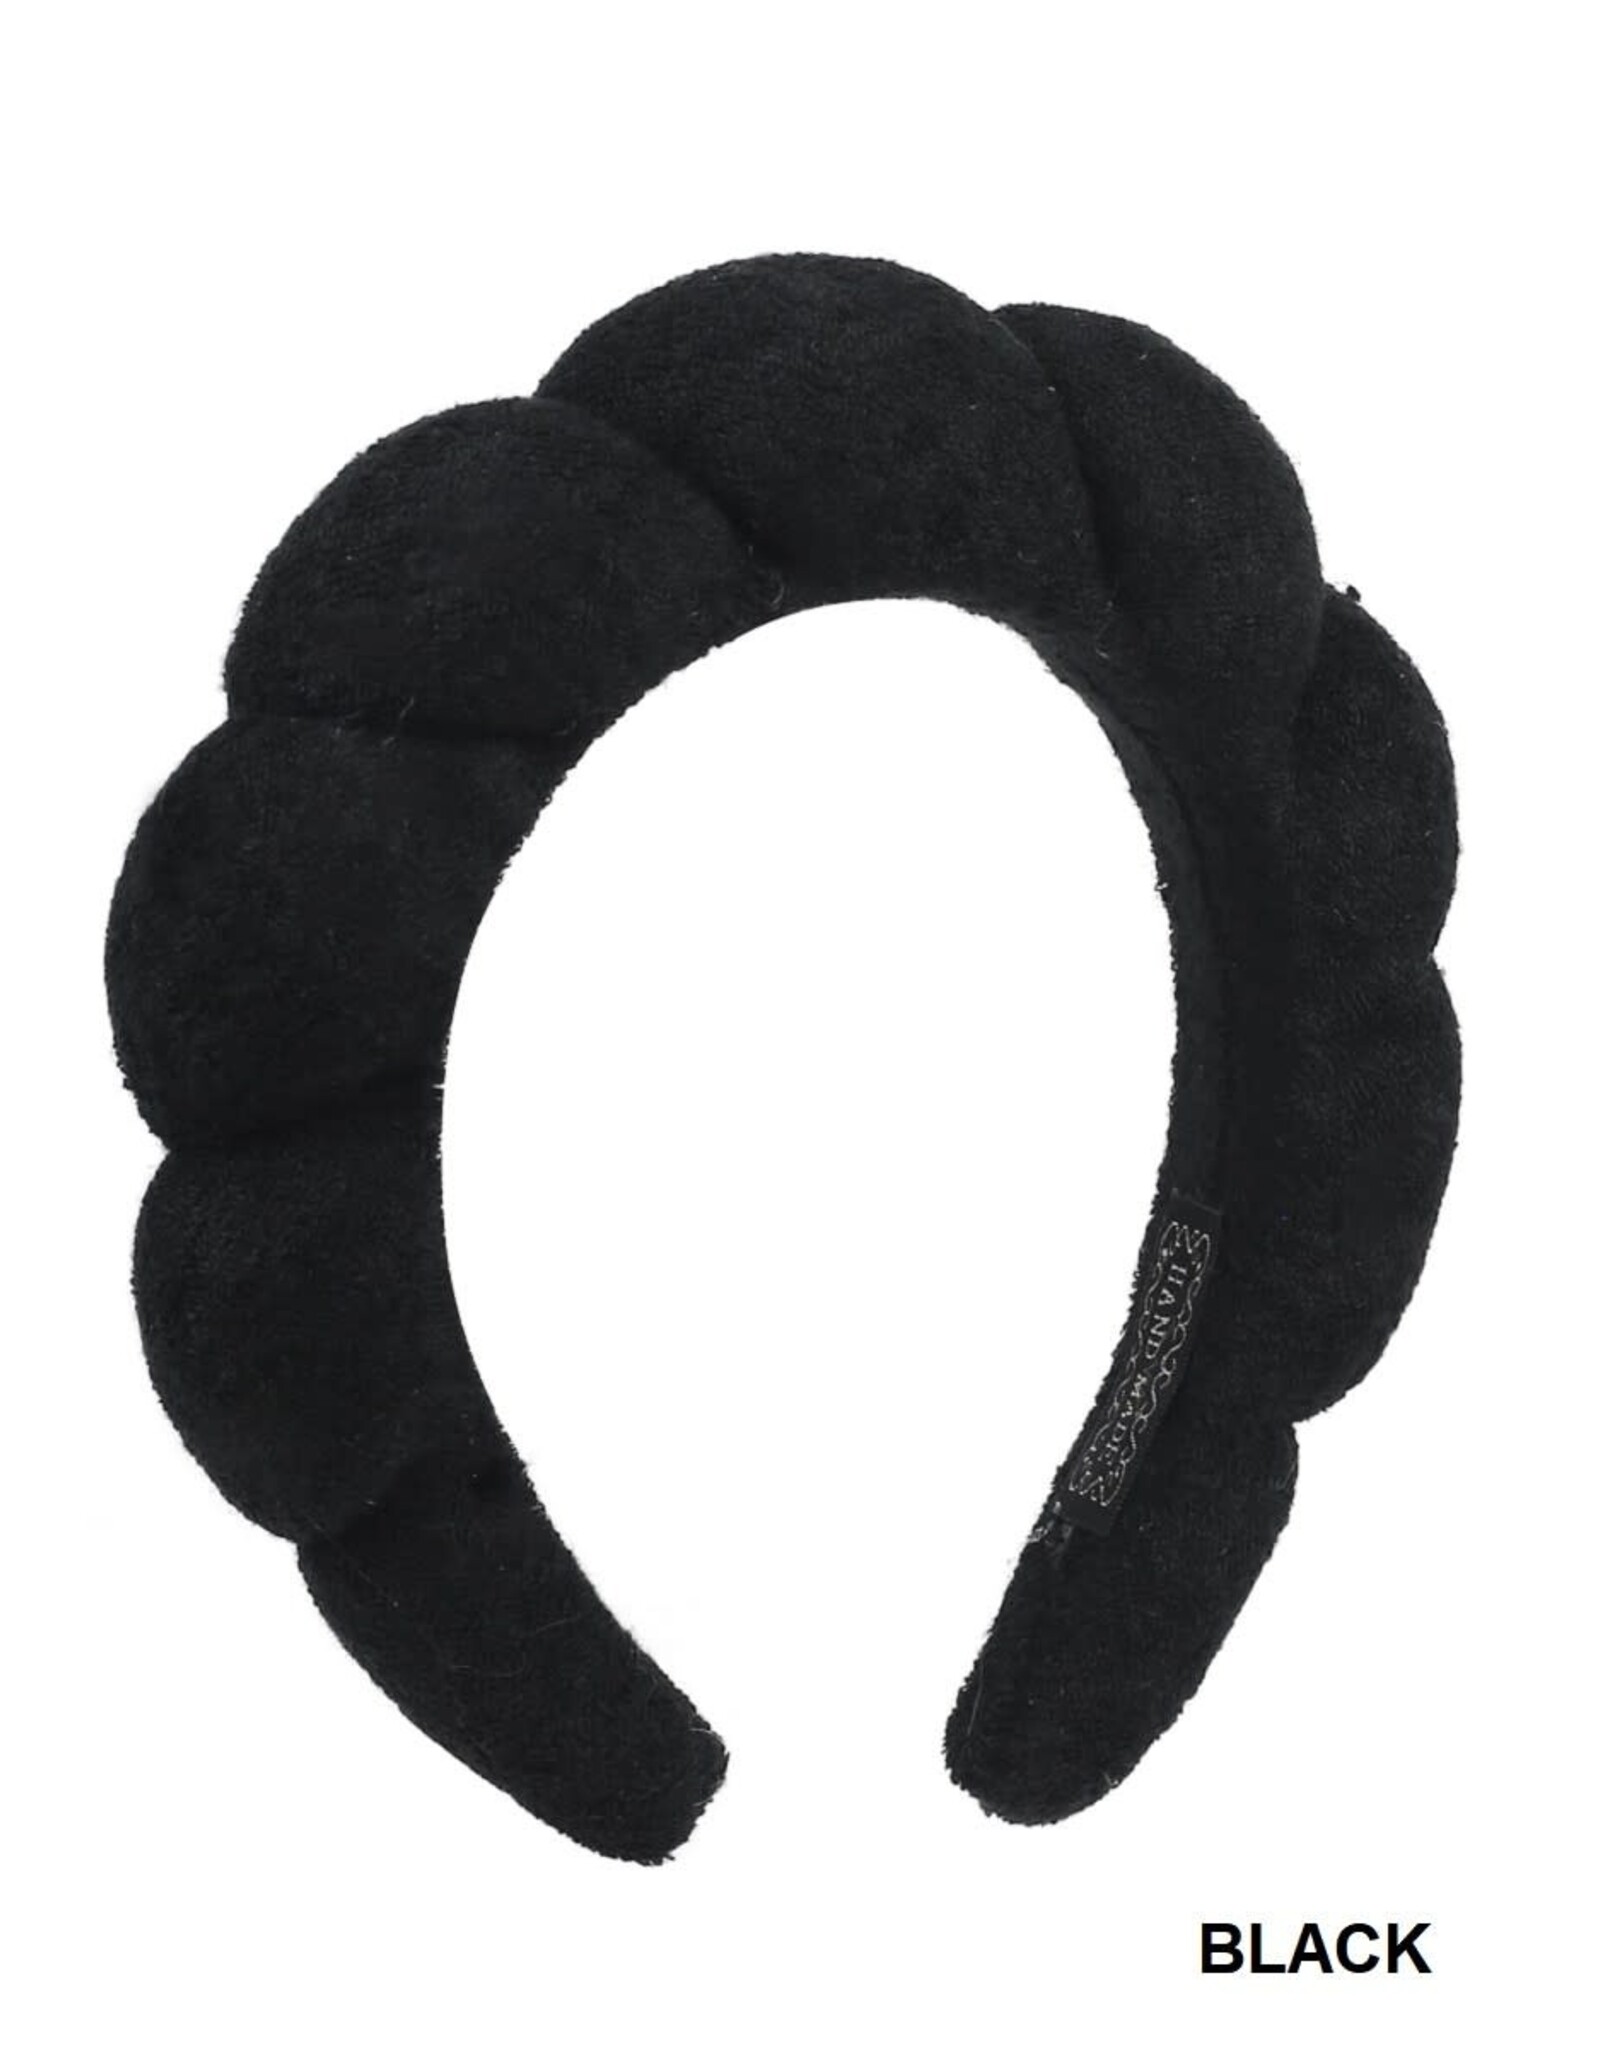 Terry Spa Headband